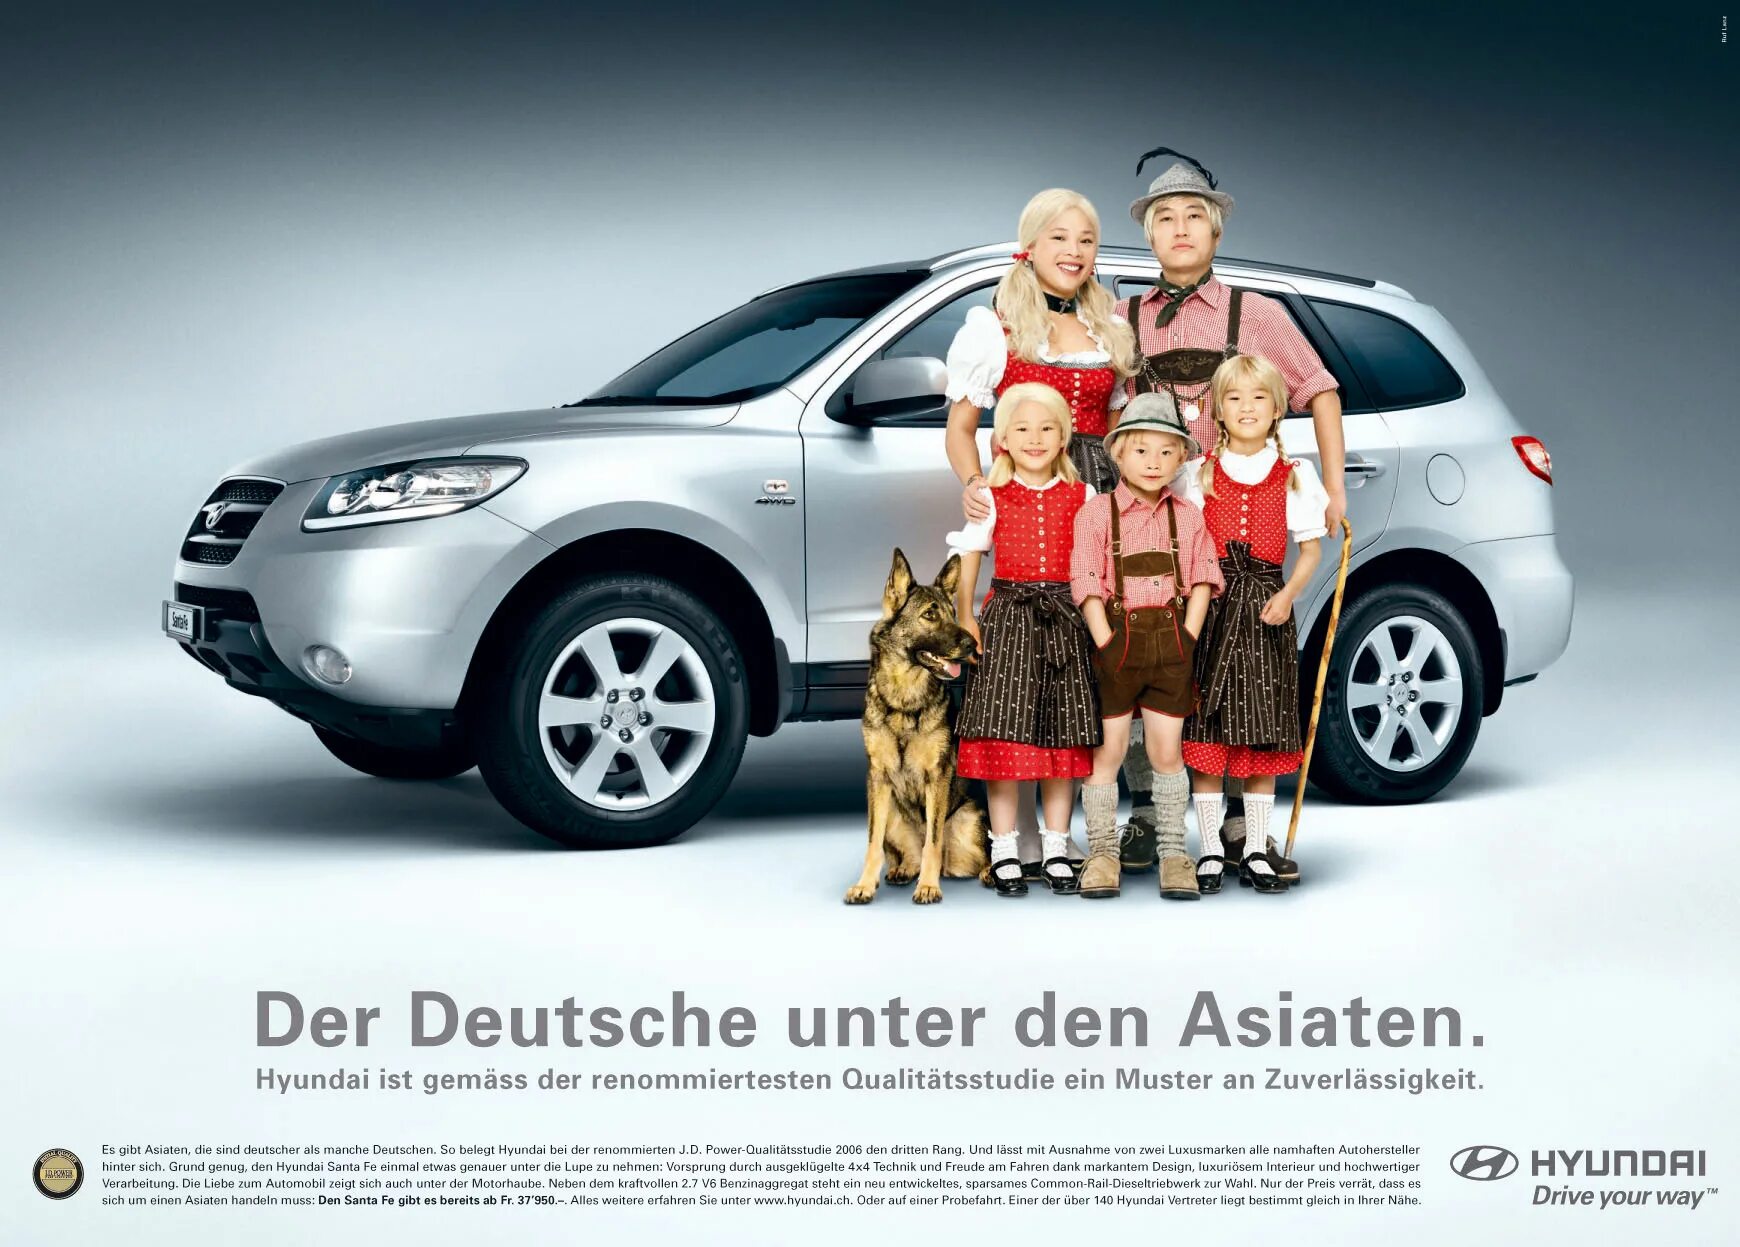 Реклама семейного автомобиля. Реклама машины с семьей. Семья реклама авто. Реклама Hyundai. Страшная реклама авто